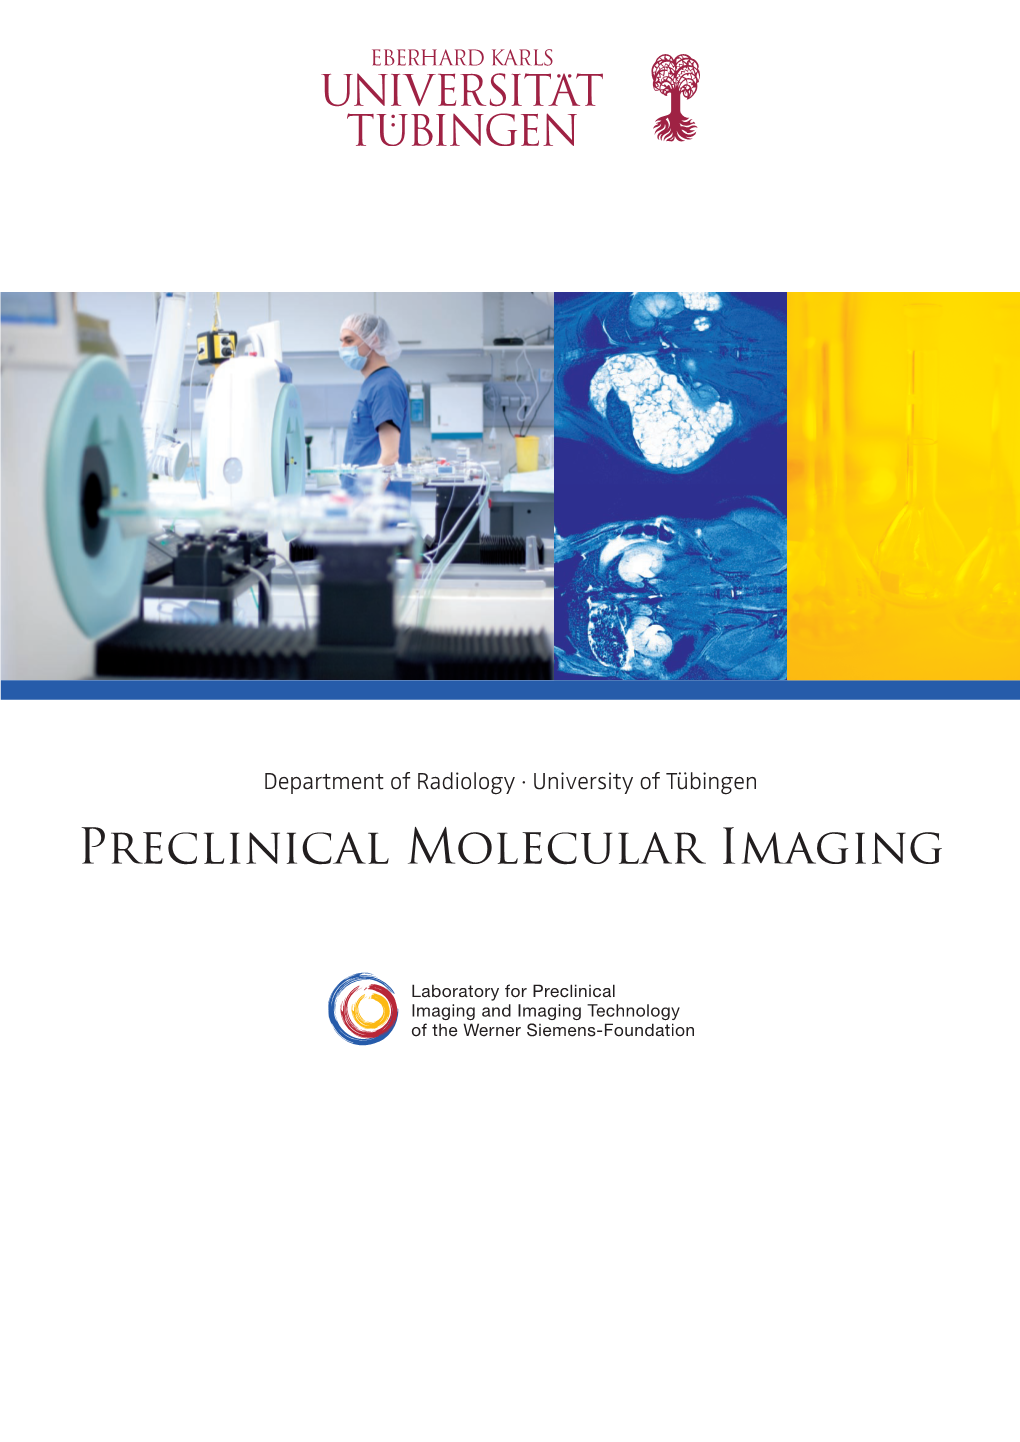 Preclinical Molecular Imaging Contents